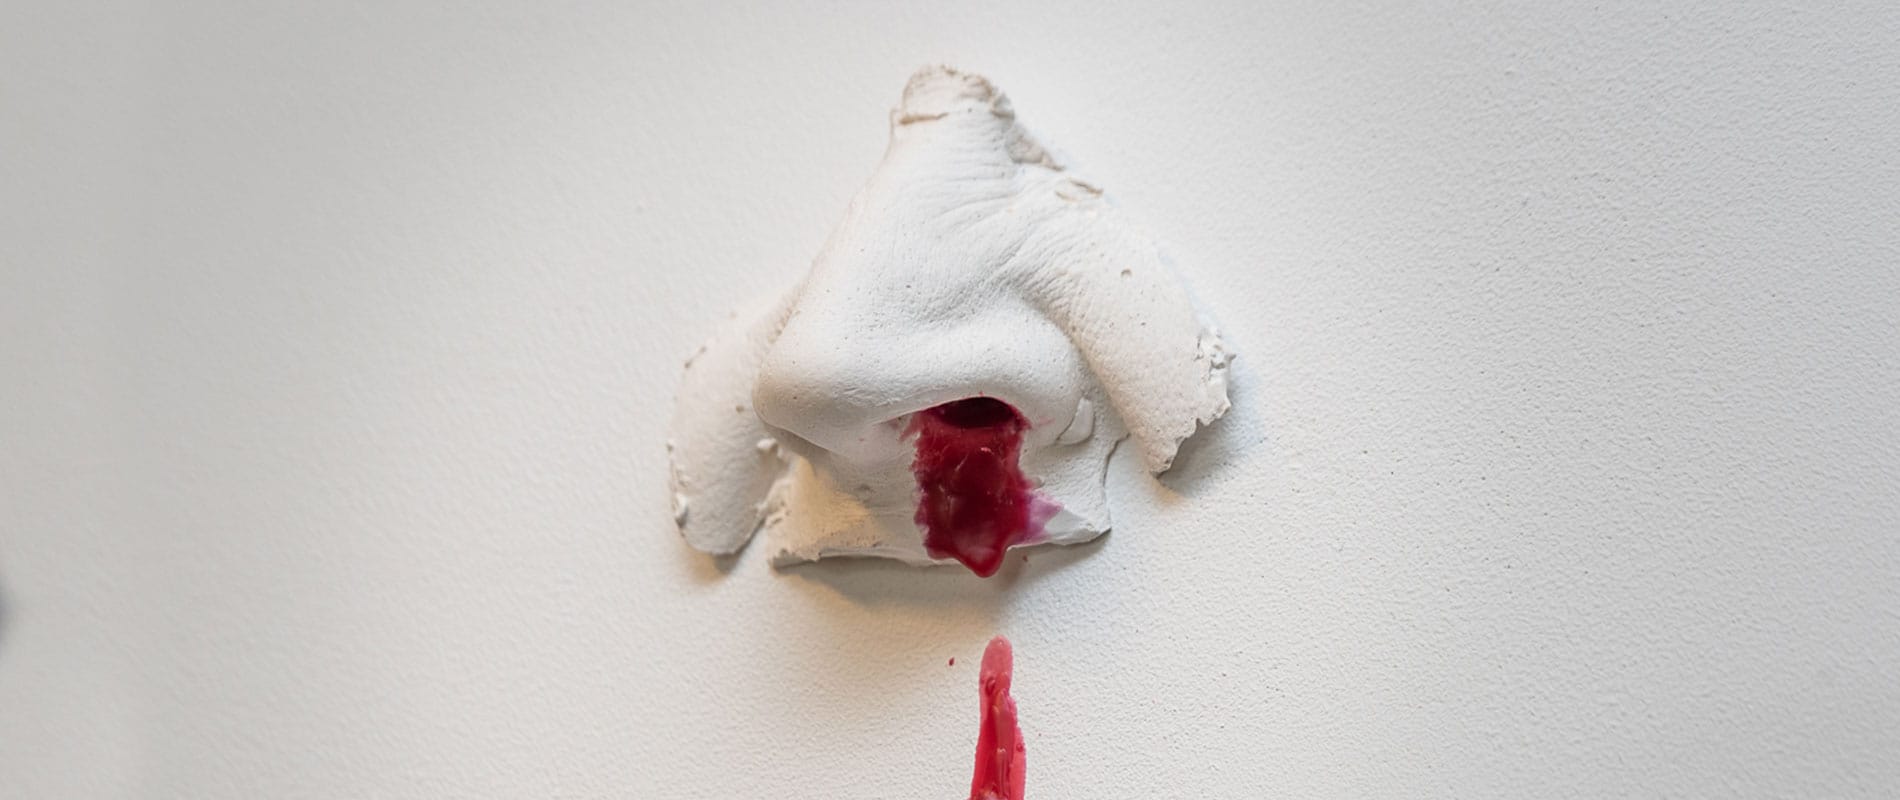 kunst - Ingrid Slaa - beeld - neus - gips